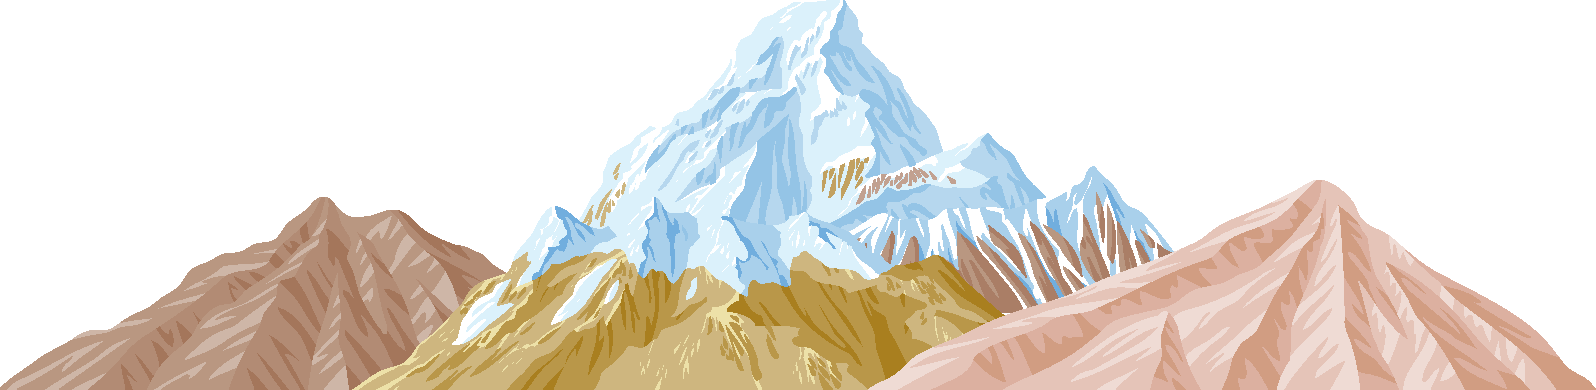 Mountains - Mountains Vector (1596x390)